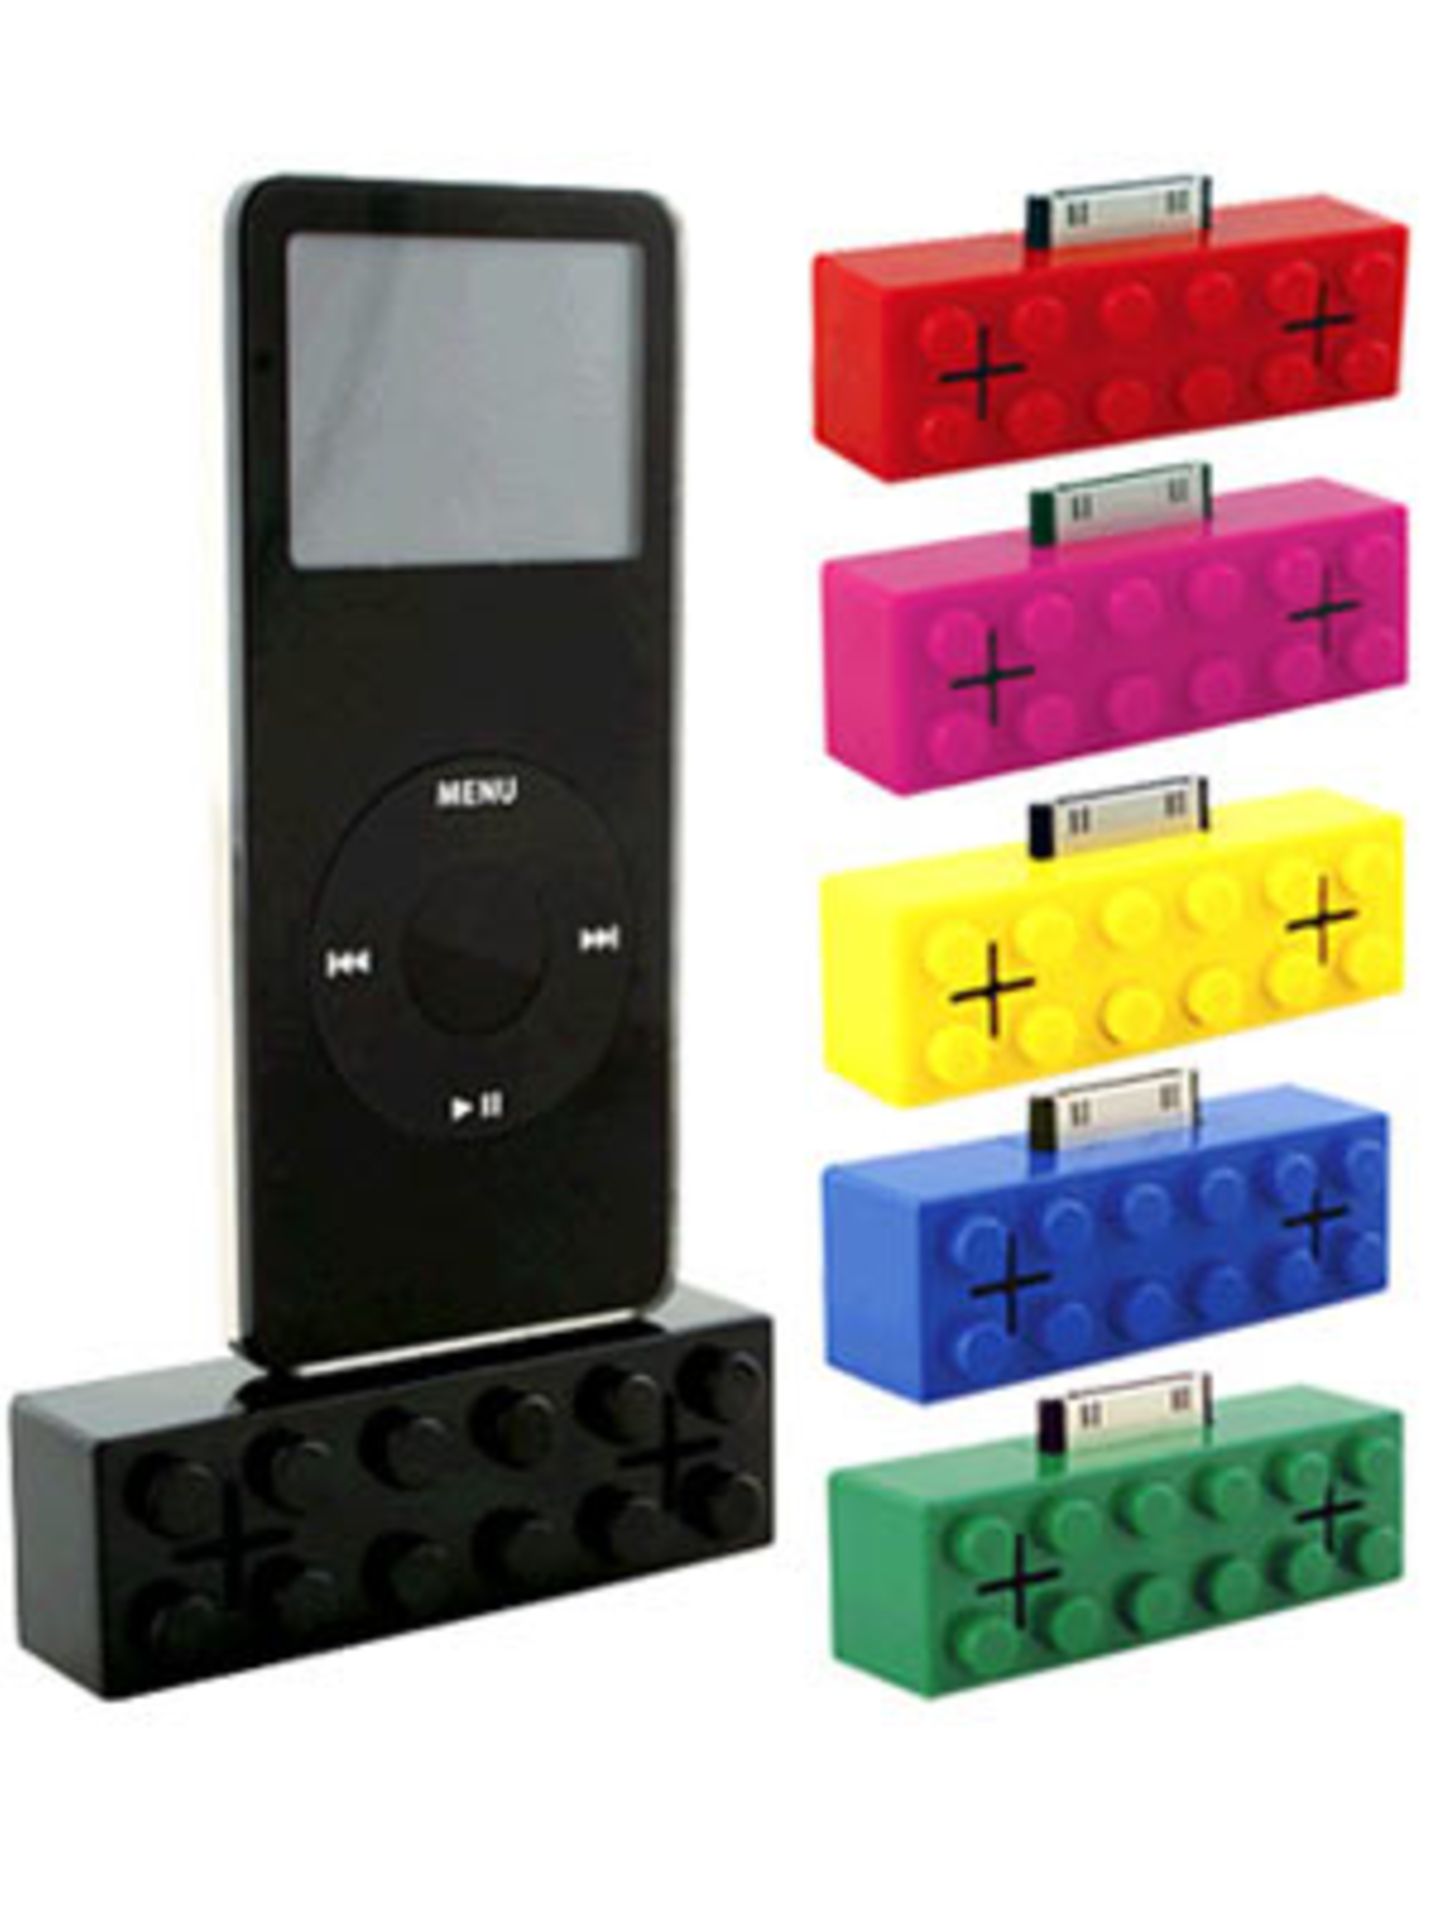 Retro-Lautsprecher für den iPod von fredflare.com, um 30 Euro.